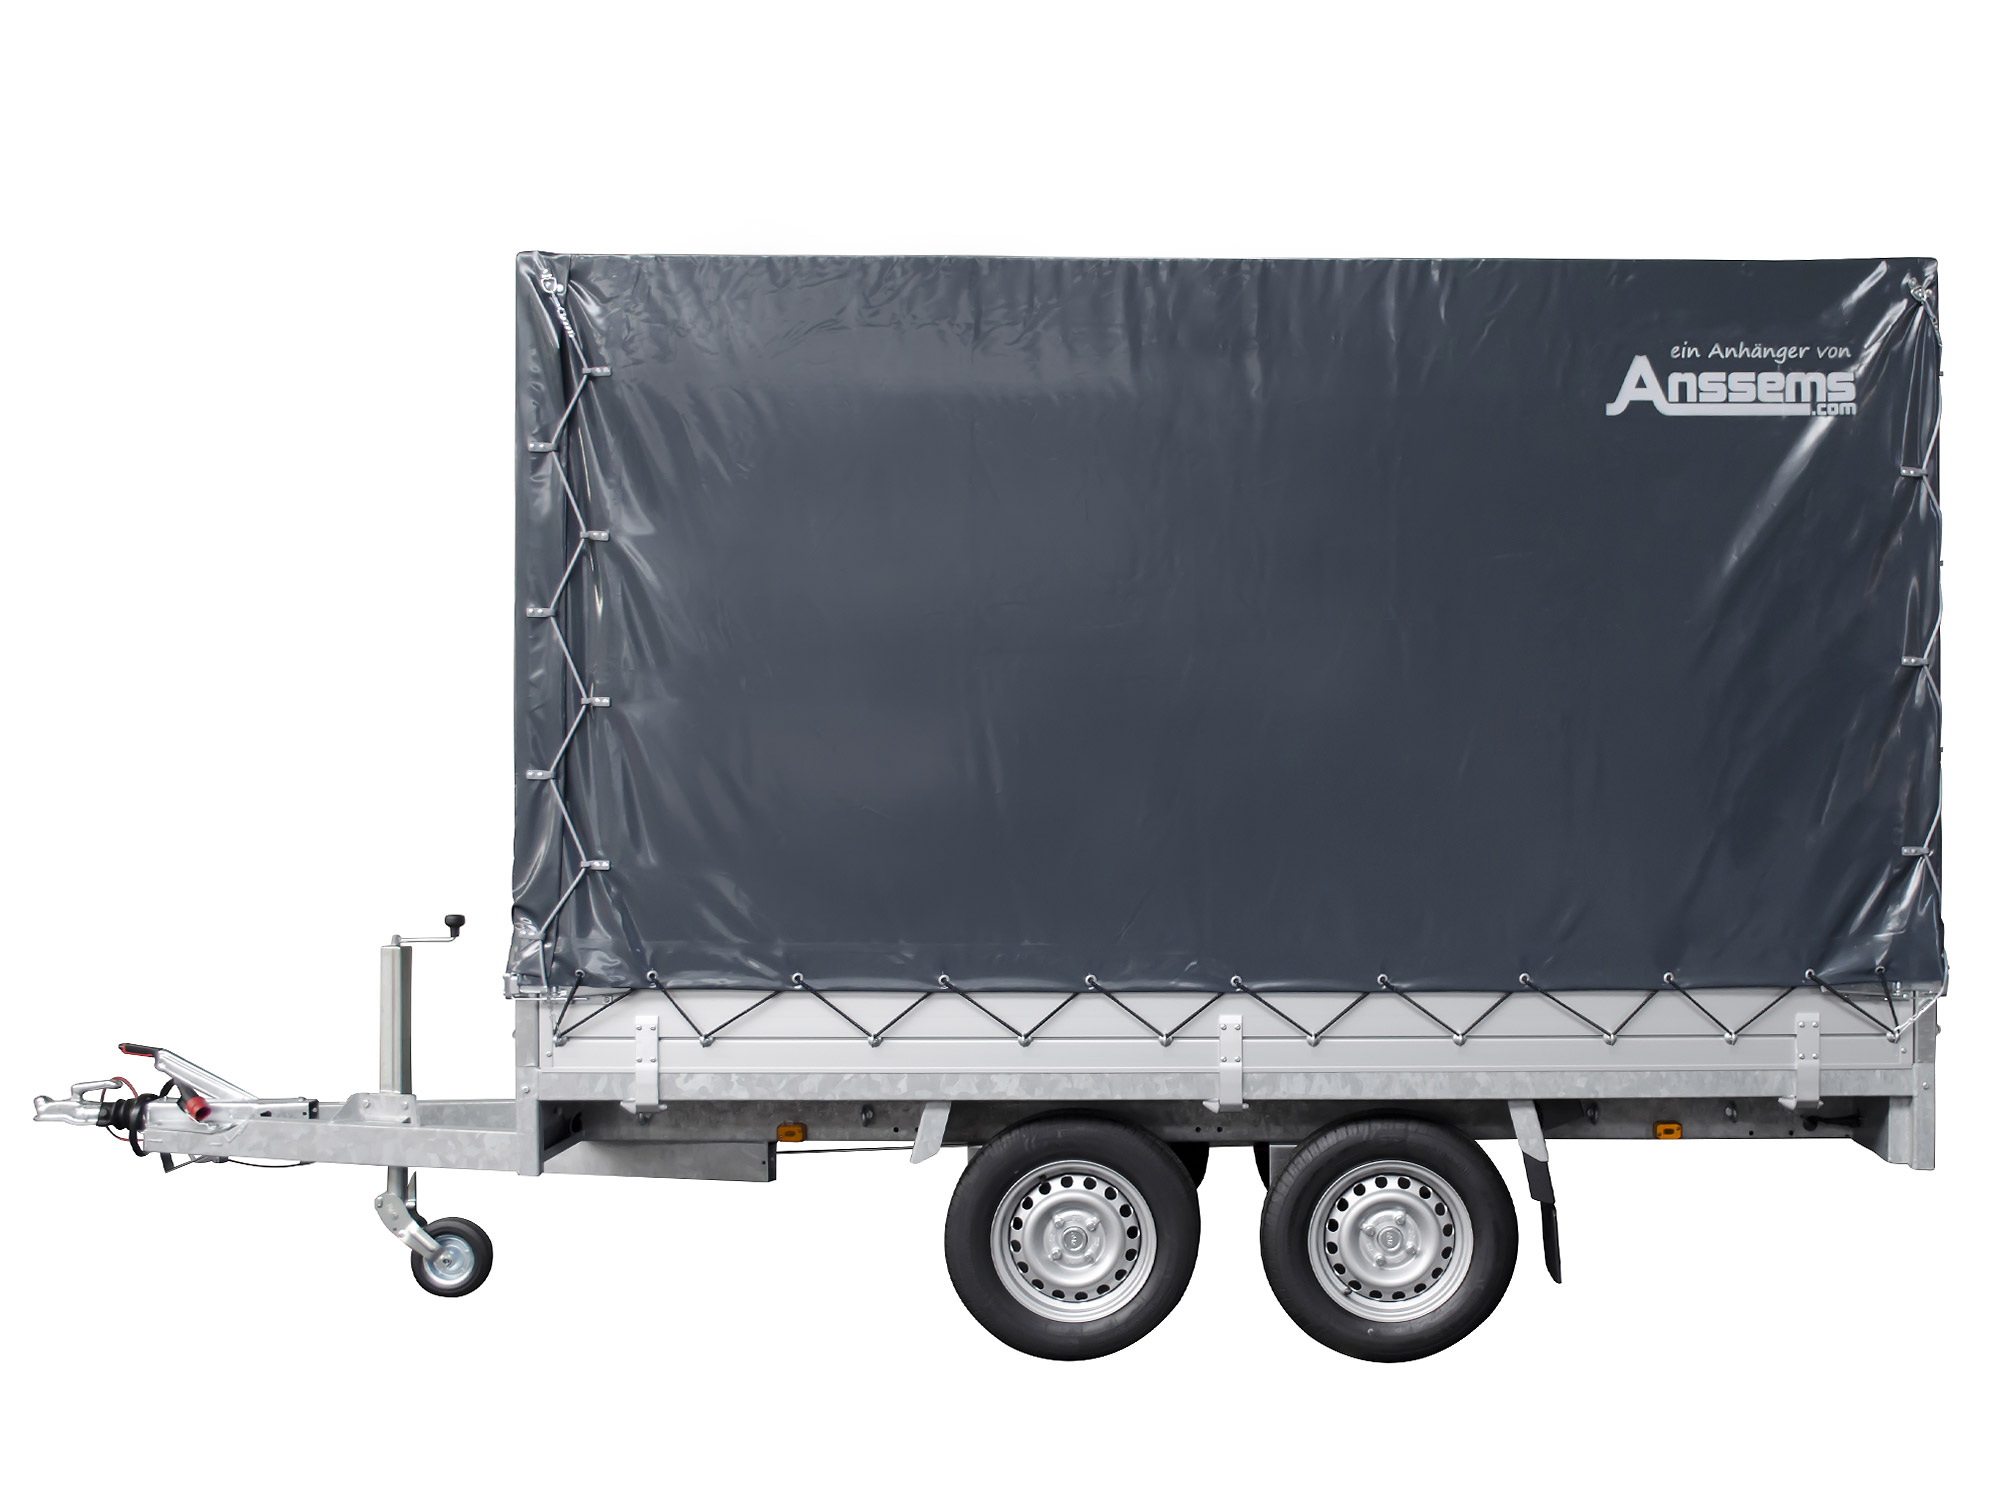 Anssems PKW Anhänger Hochlader Alu 2500 kg, Ladefläche 3,05 x 1,53 m mit Aktionsplane 1,80m